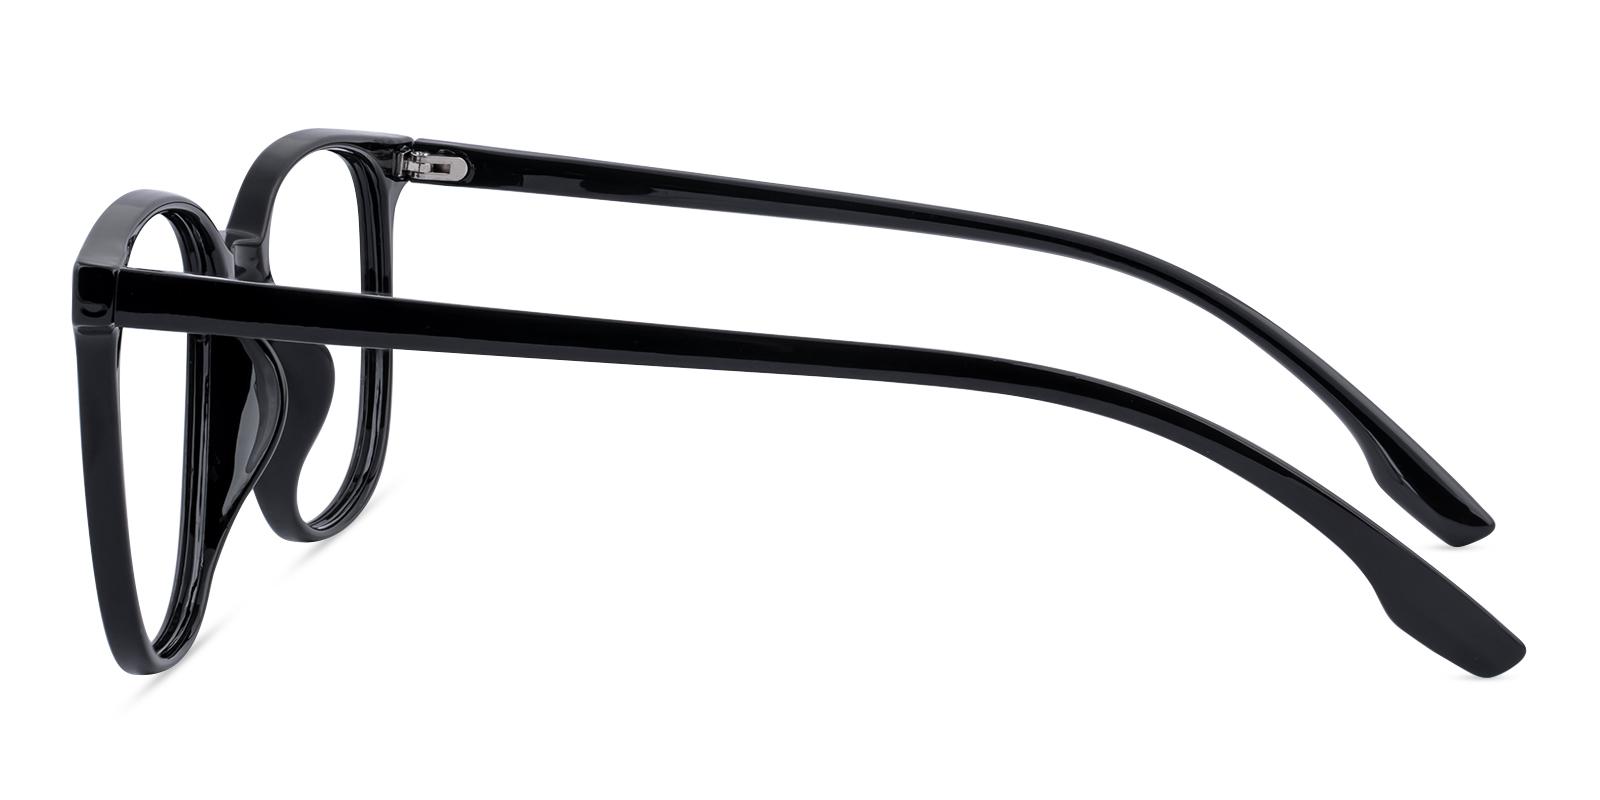 Prosster Black Plastic Eyeglasses , UniversalBridgeFit , Lightweight Frames from ABBE Glasses